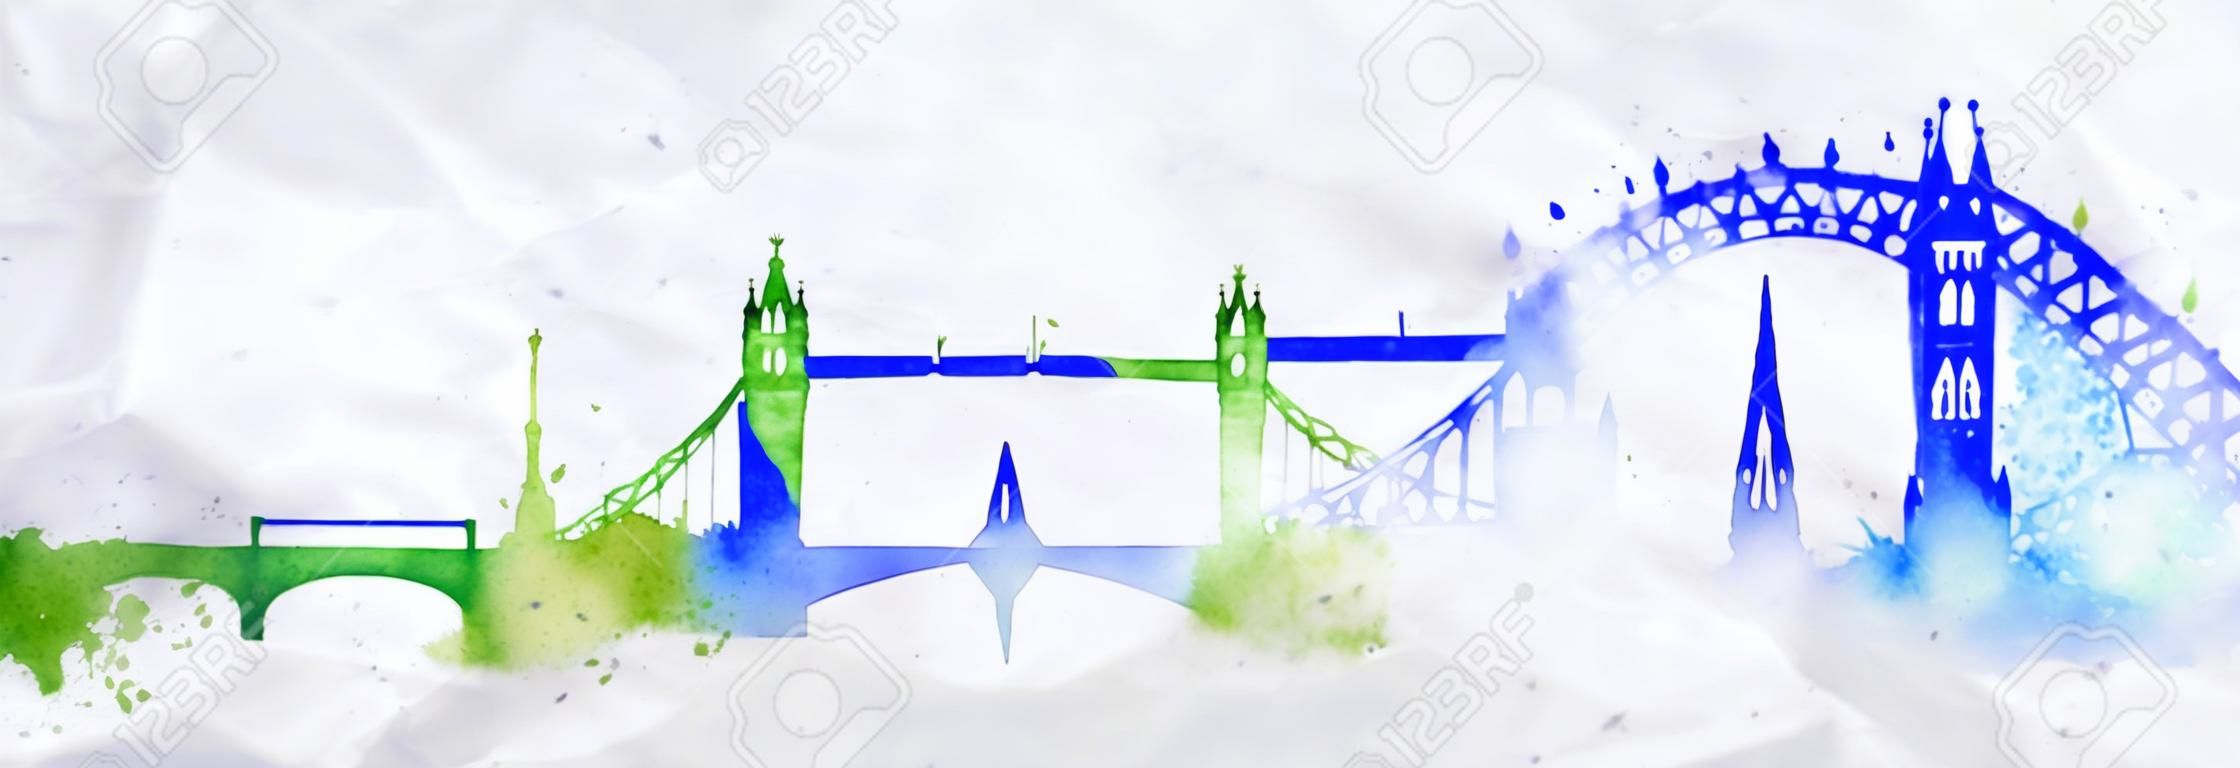 Schattenbild der London-Stadt mit Spritzern von Aquarell gemalt fällt Streifen Sehenswürdigkeiten mit einem blau-grünen Farben